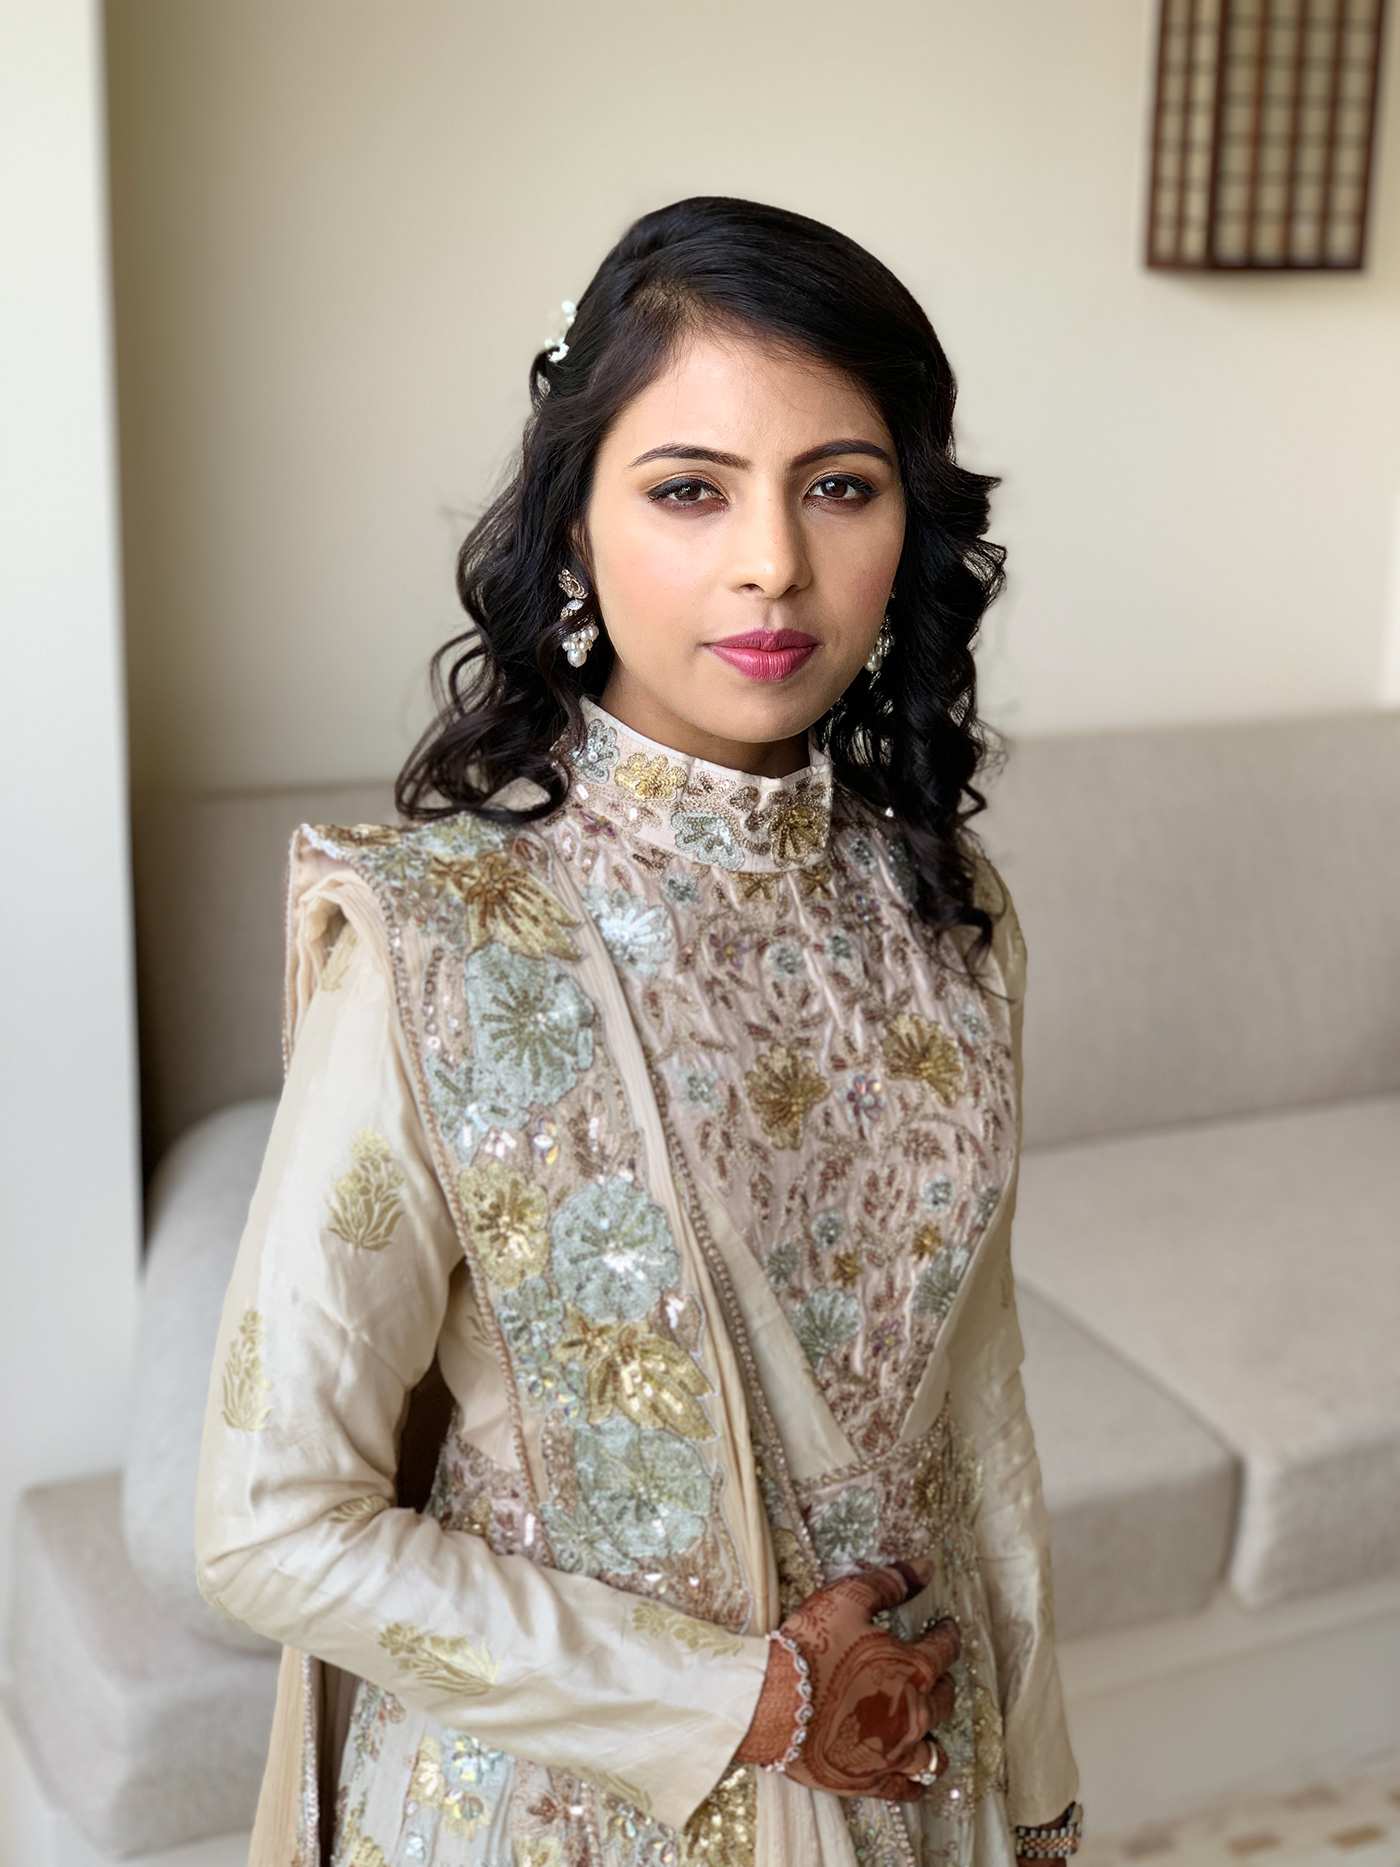 Makeup for neha wedding Goa jan 20th 2019 grand Hayat Goa makeup by Kalpesh Joshi hairstyle by Salma Sayyed